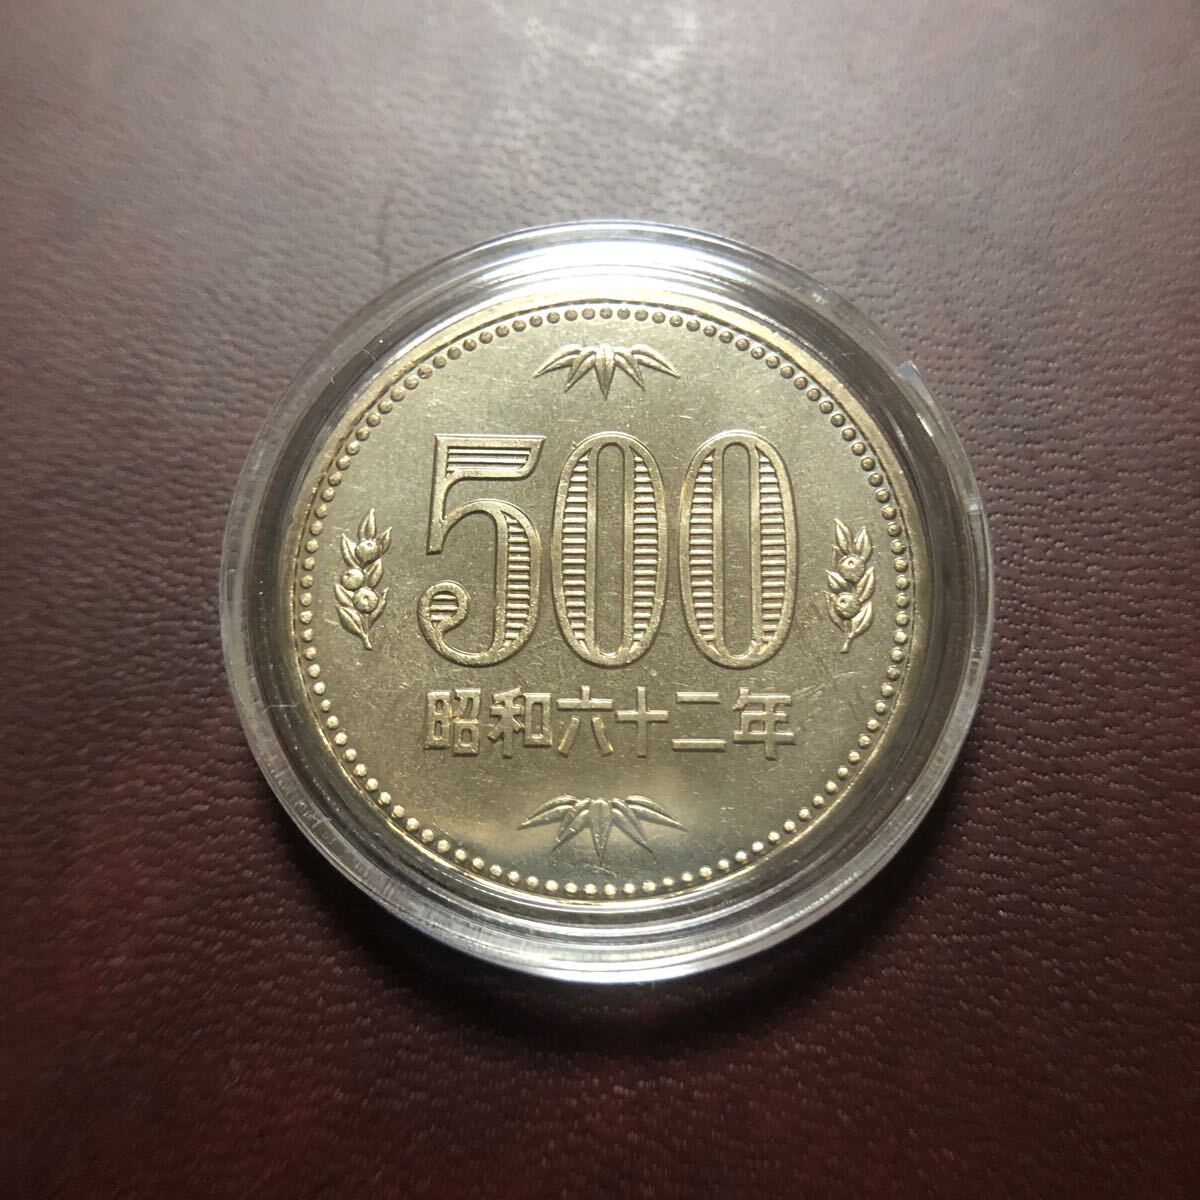 500 jpy coin Showa era 62 year set ..